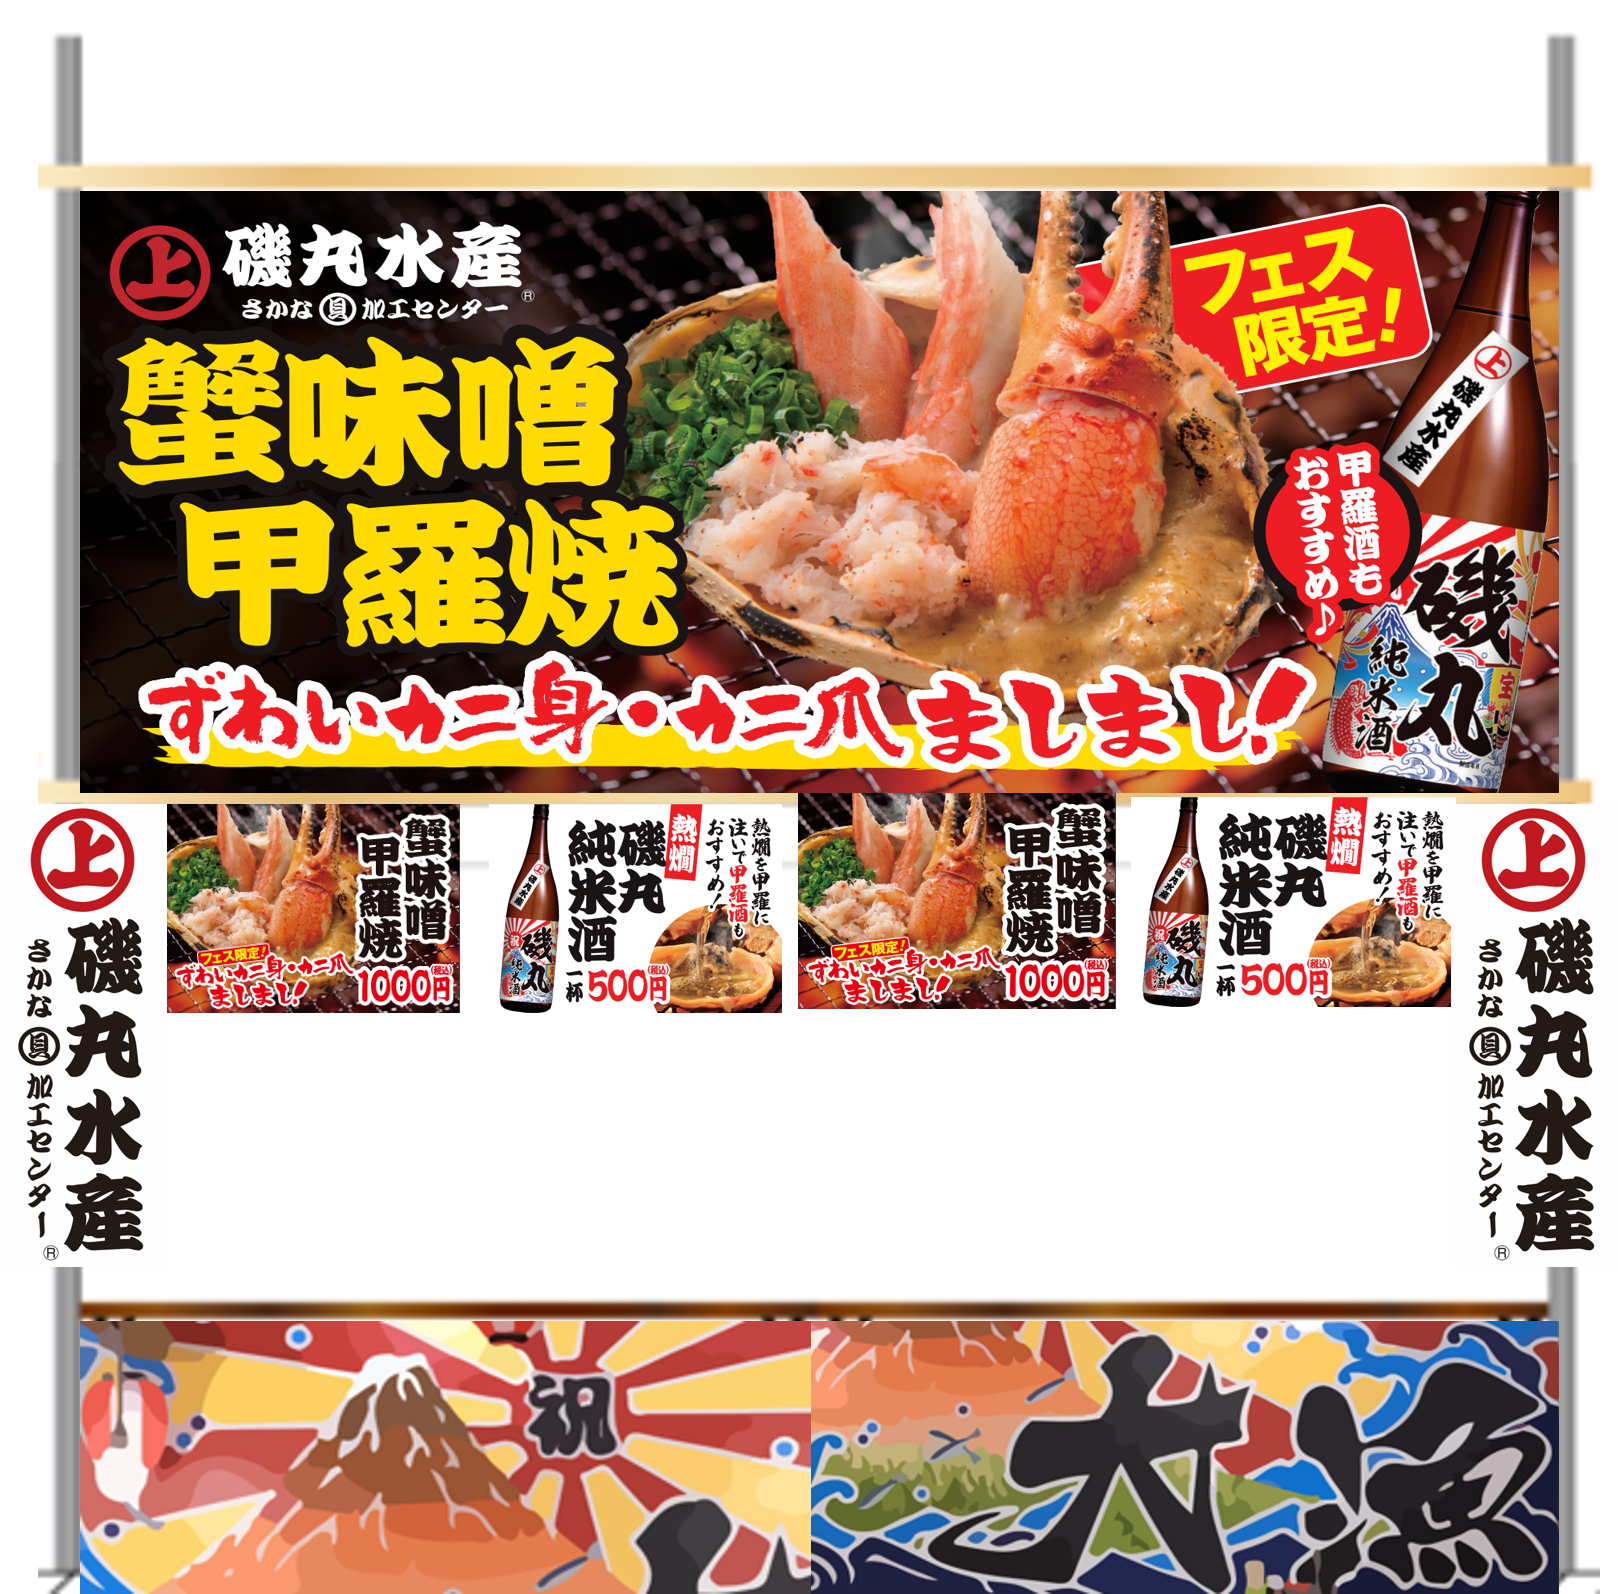 魚ジャパンフェスまであと2日！ 磯丸水産名物「蟹味噌甲羅焼」のフェス限定バージョンがデビュー‼